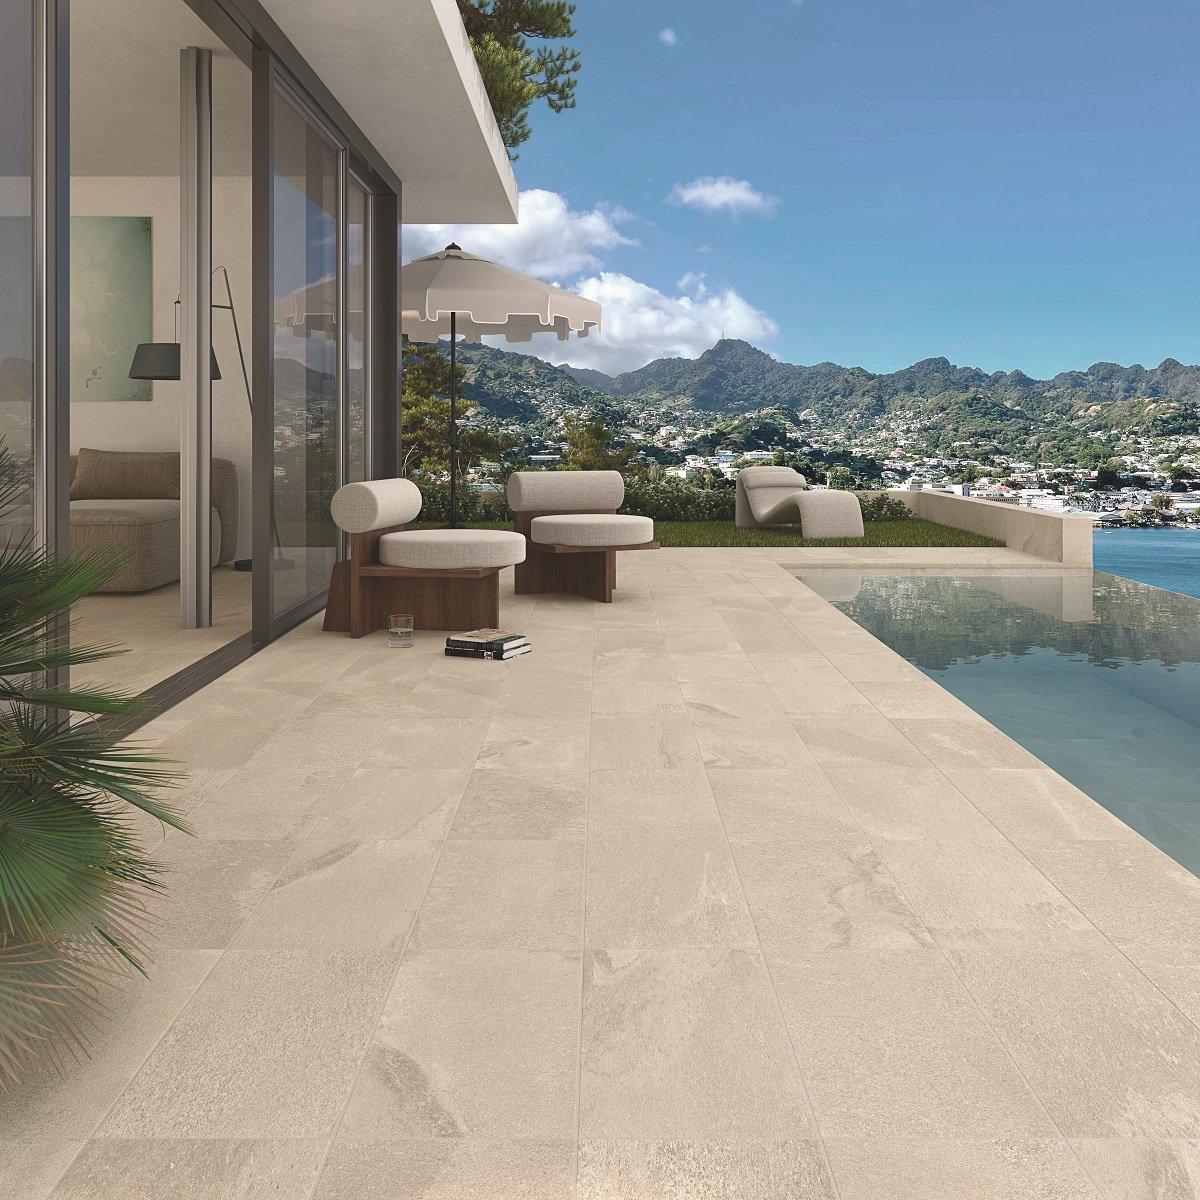 Carrelage aspect pierre beige nuances claires sans motifs 30x60 cm sur terrasse extérieure tons neutres mobilier moderne